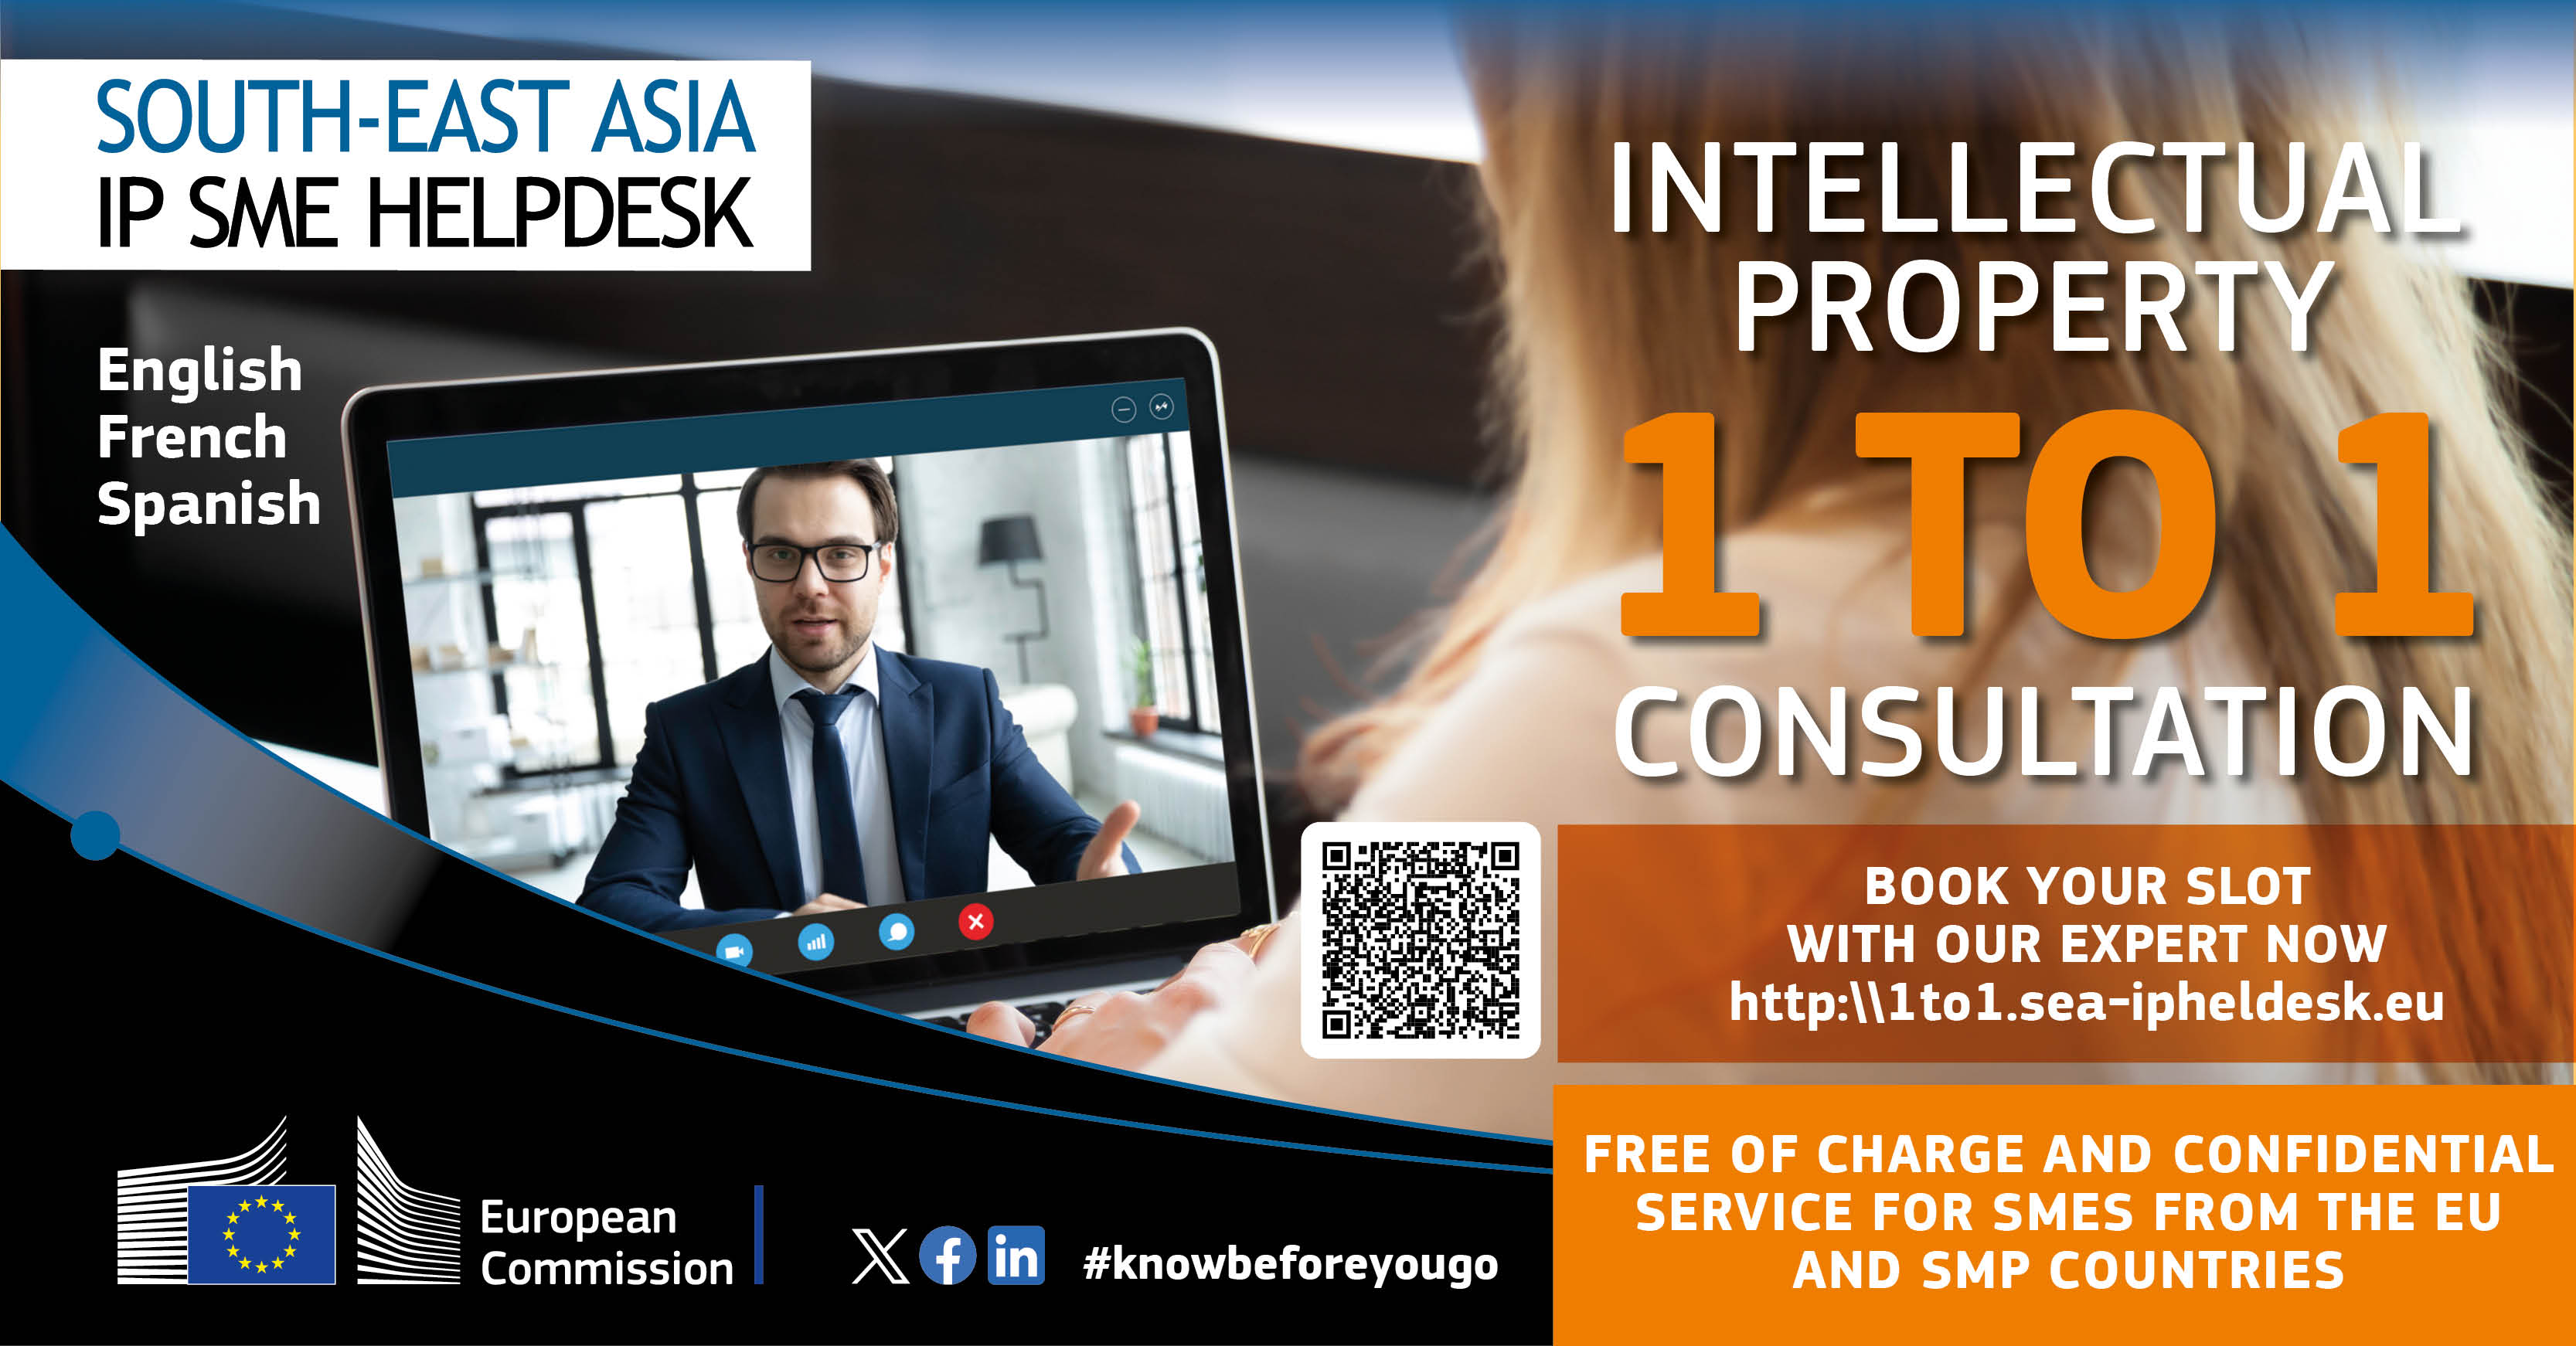 Коя е най-добрата стратегия за интелектуална собственост (IP) за Югоизточна Азия?